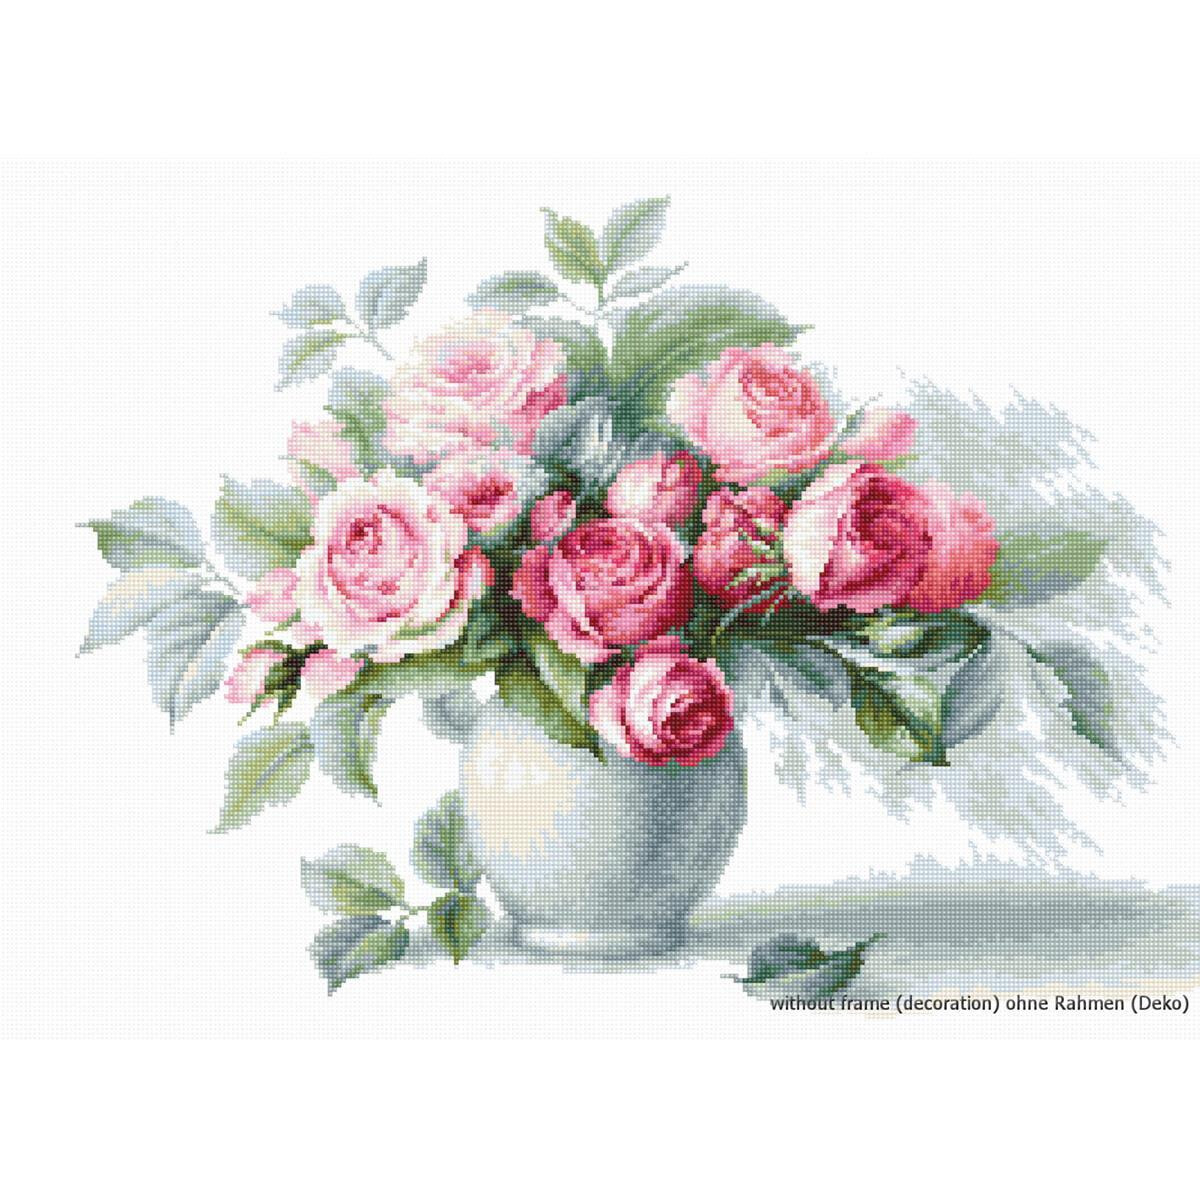 Un arrangement floral de roses roses et blanches avec des...